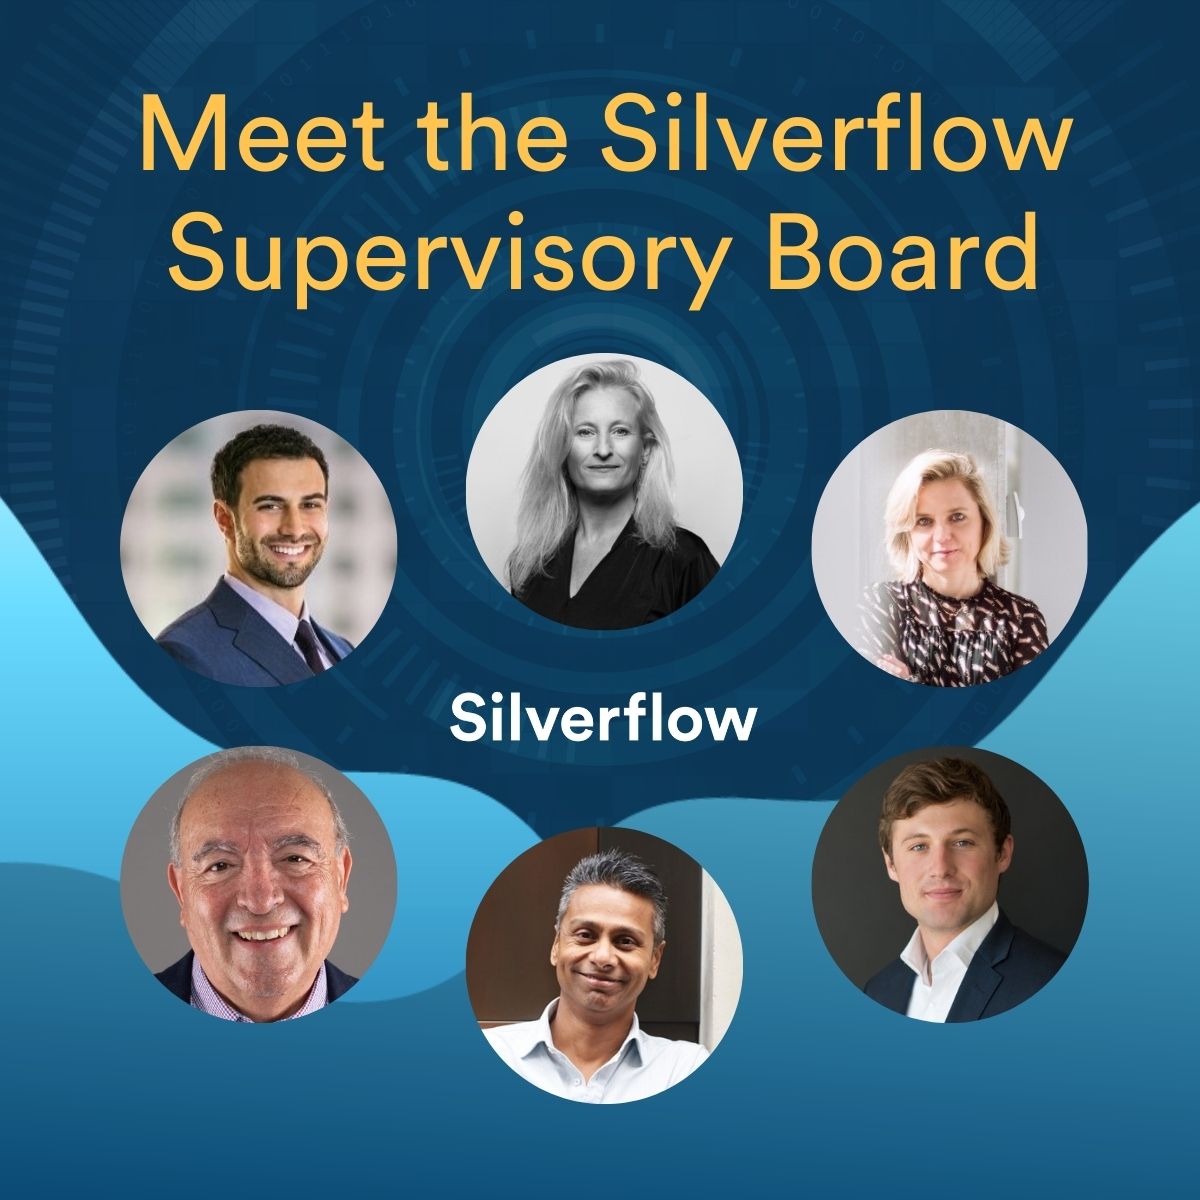 Silverflow Supervisory Board